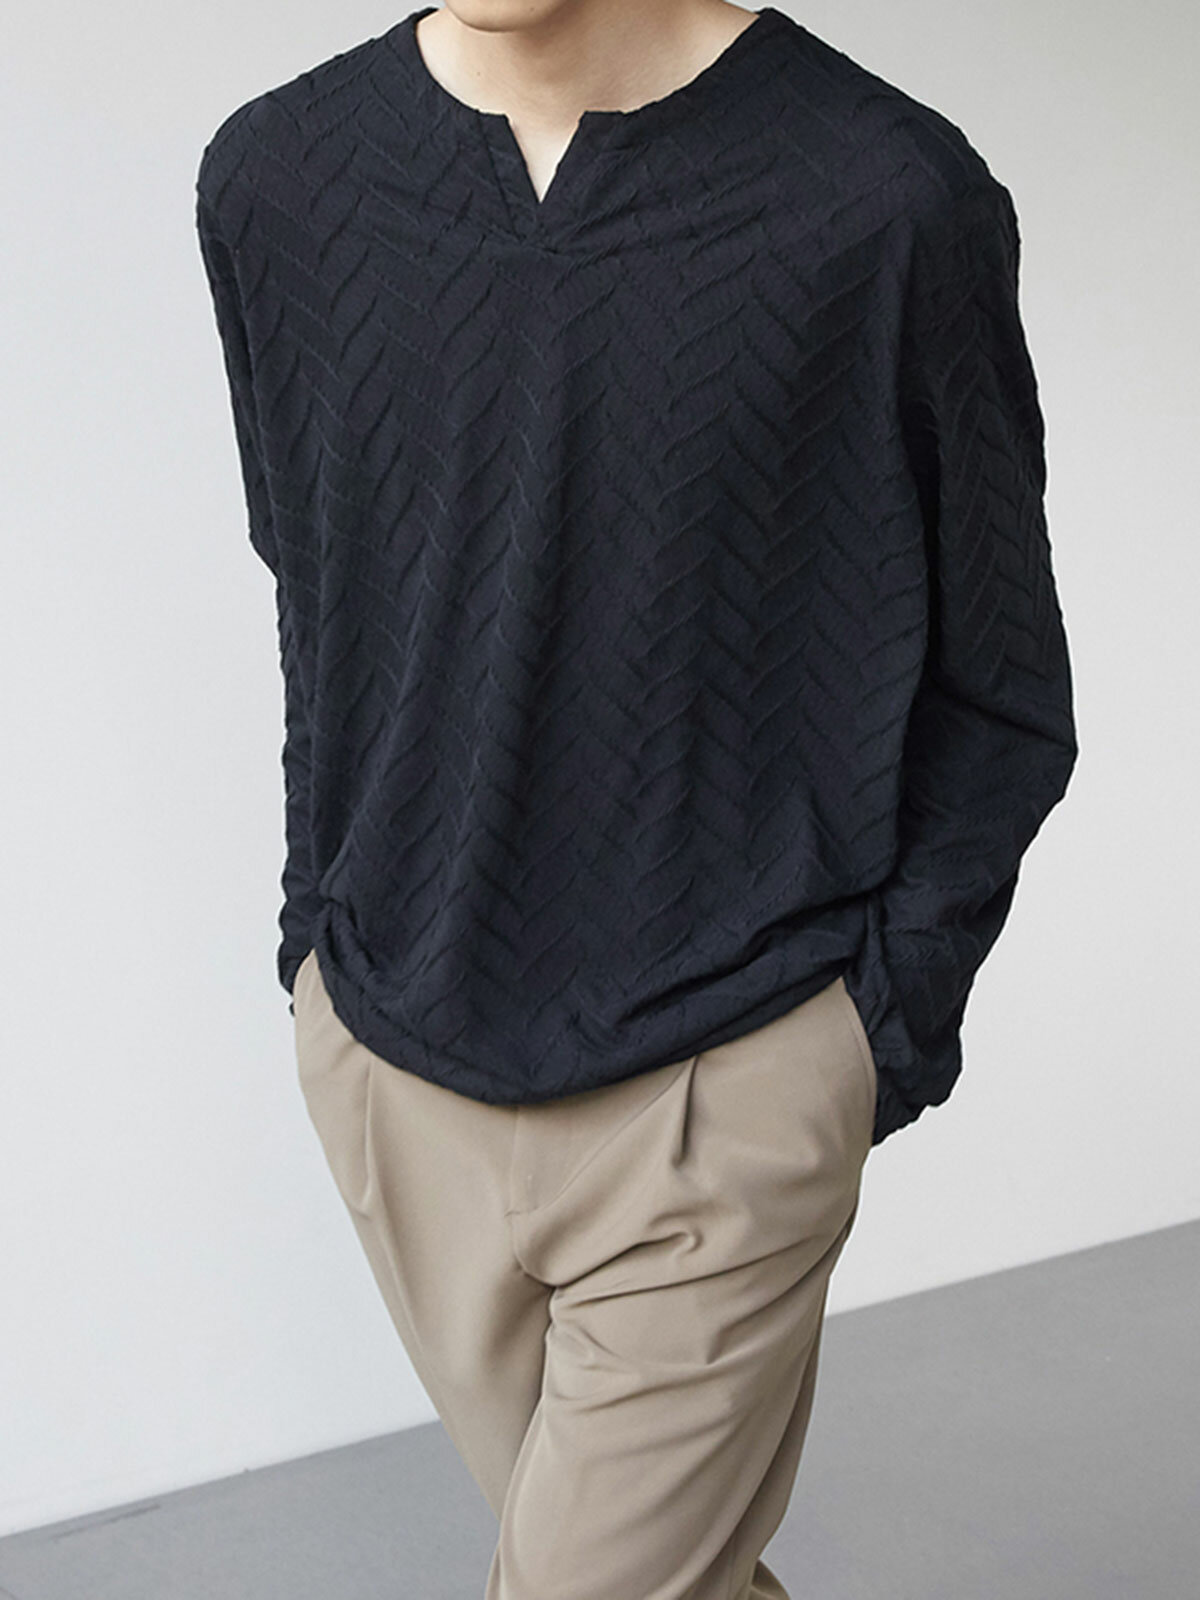 Camisetas masculinas de manga comprida de algodão mercerizado com gola em V